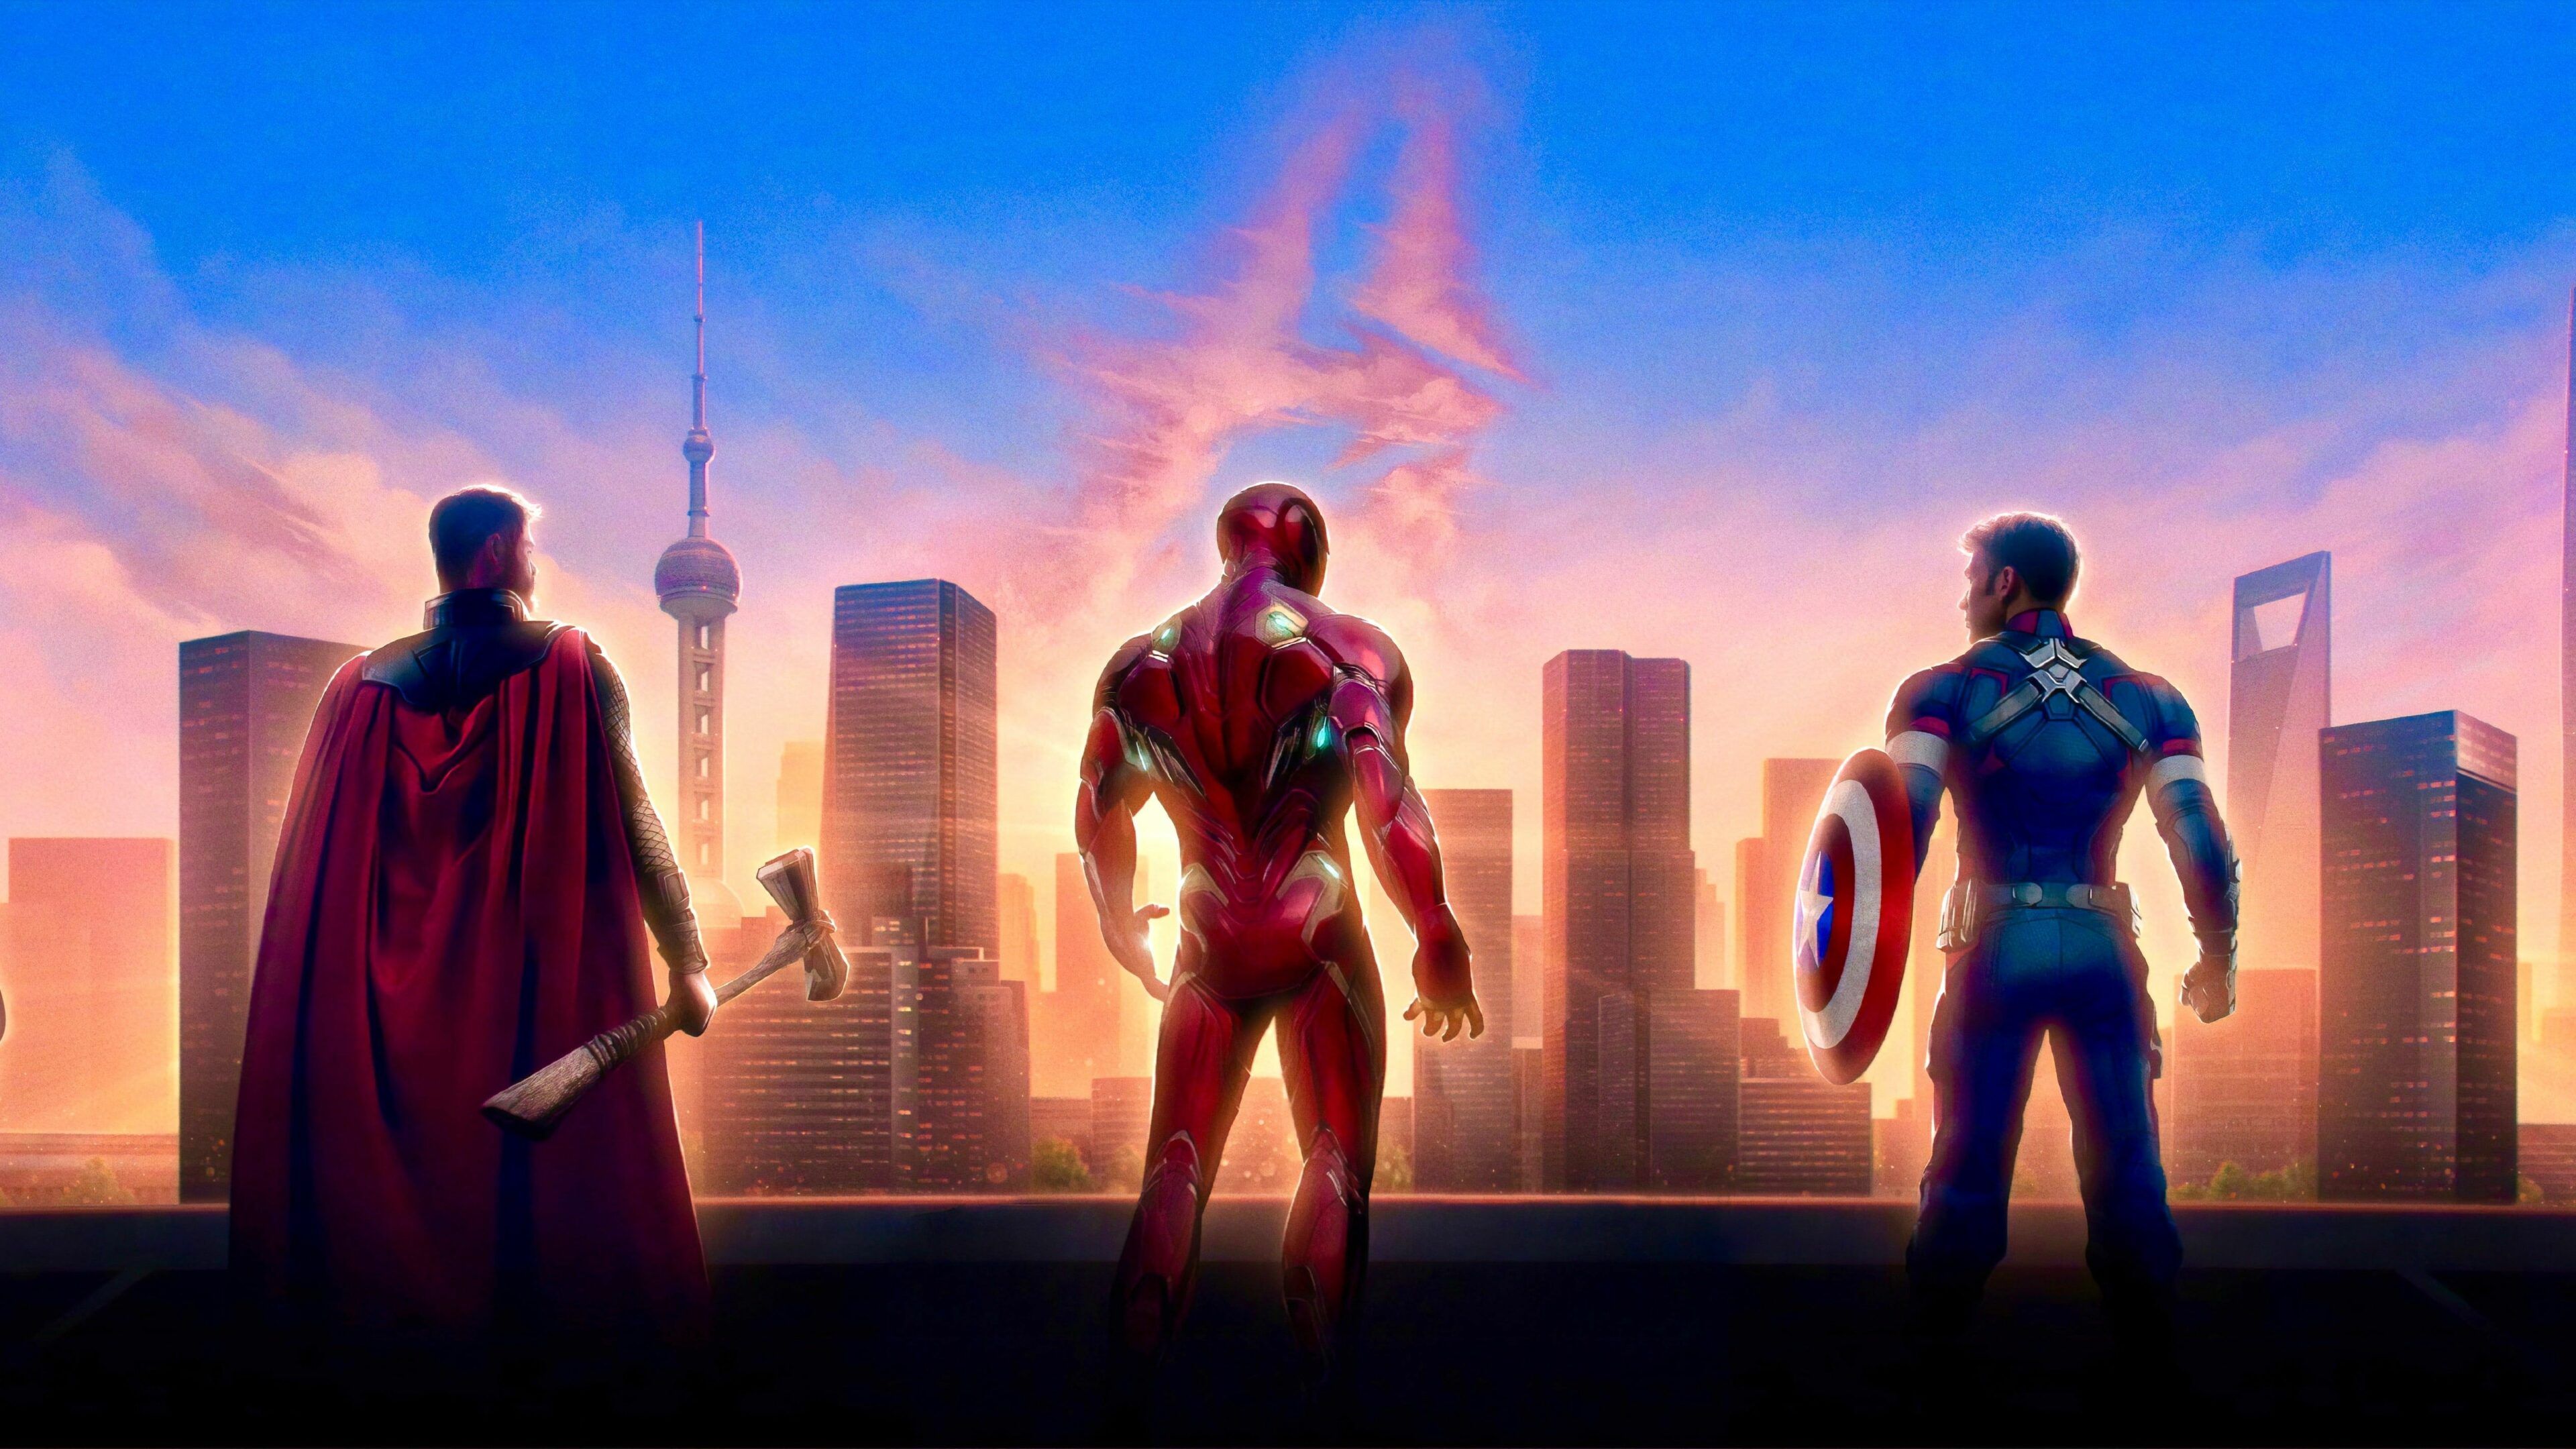 HD wallpaper: The Avengers, Avengers EndGame, Captain America, Iron Man, Thor Wallpaper Market